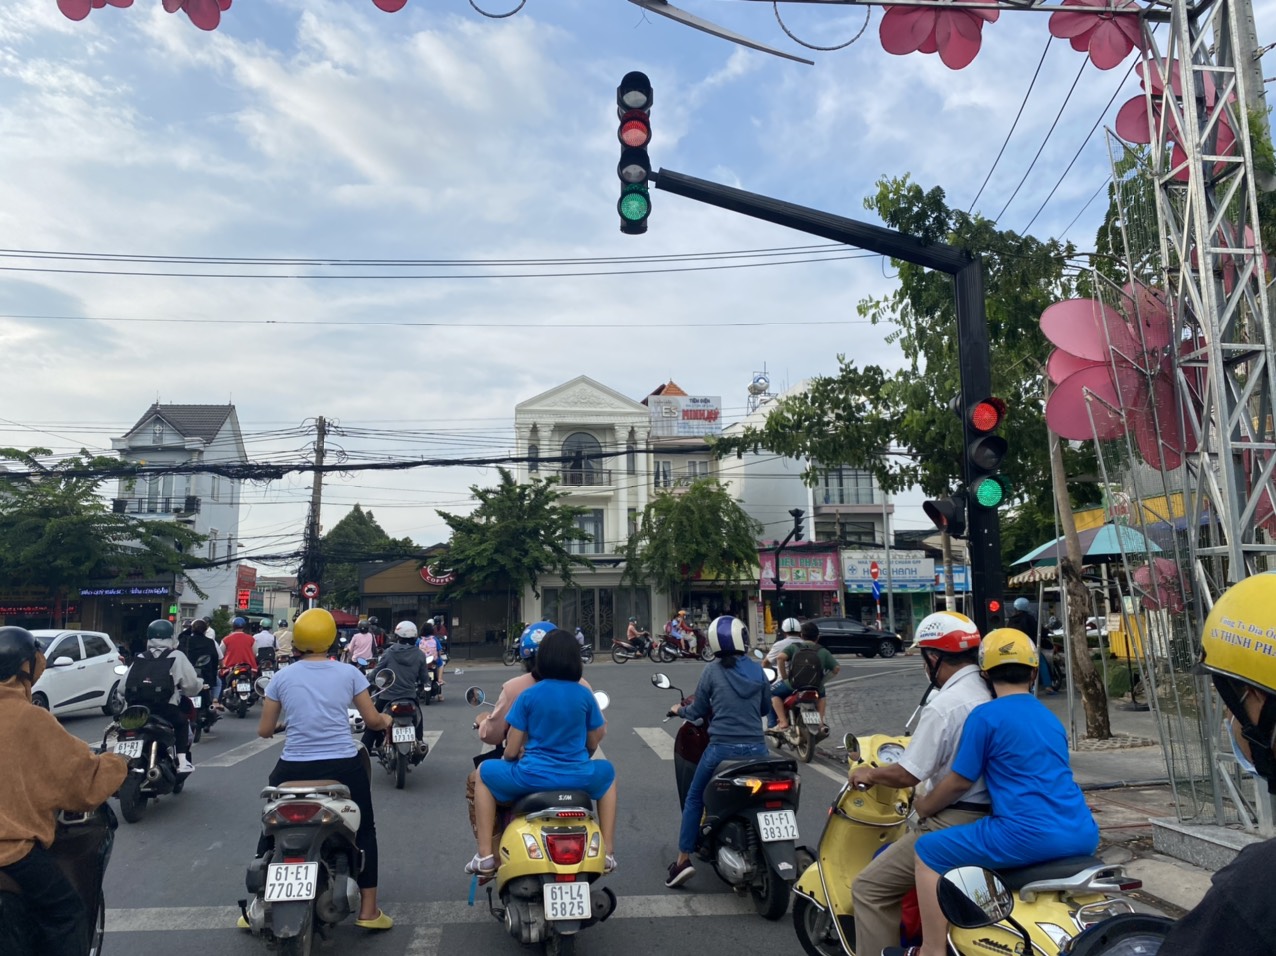 Bình Dương là một trong những tỉnh thành đầu tiên ở Việt Nam triển khai hệ thống tín hiệu giao thông thông minh. Đây là một bước tiến quan trọng trong việc tăng cường an toàn giao thông. Nếu bạn muốn biết thêm về địa điểm này, hãy xem hình ảnh liên quan đến keyword này.